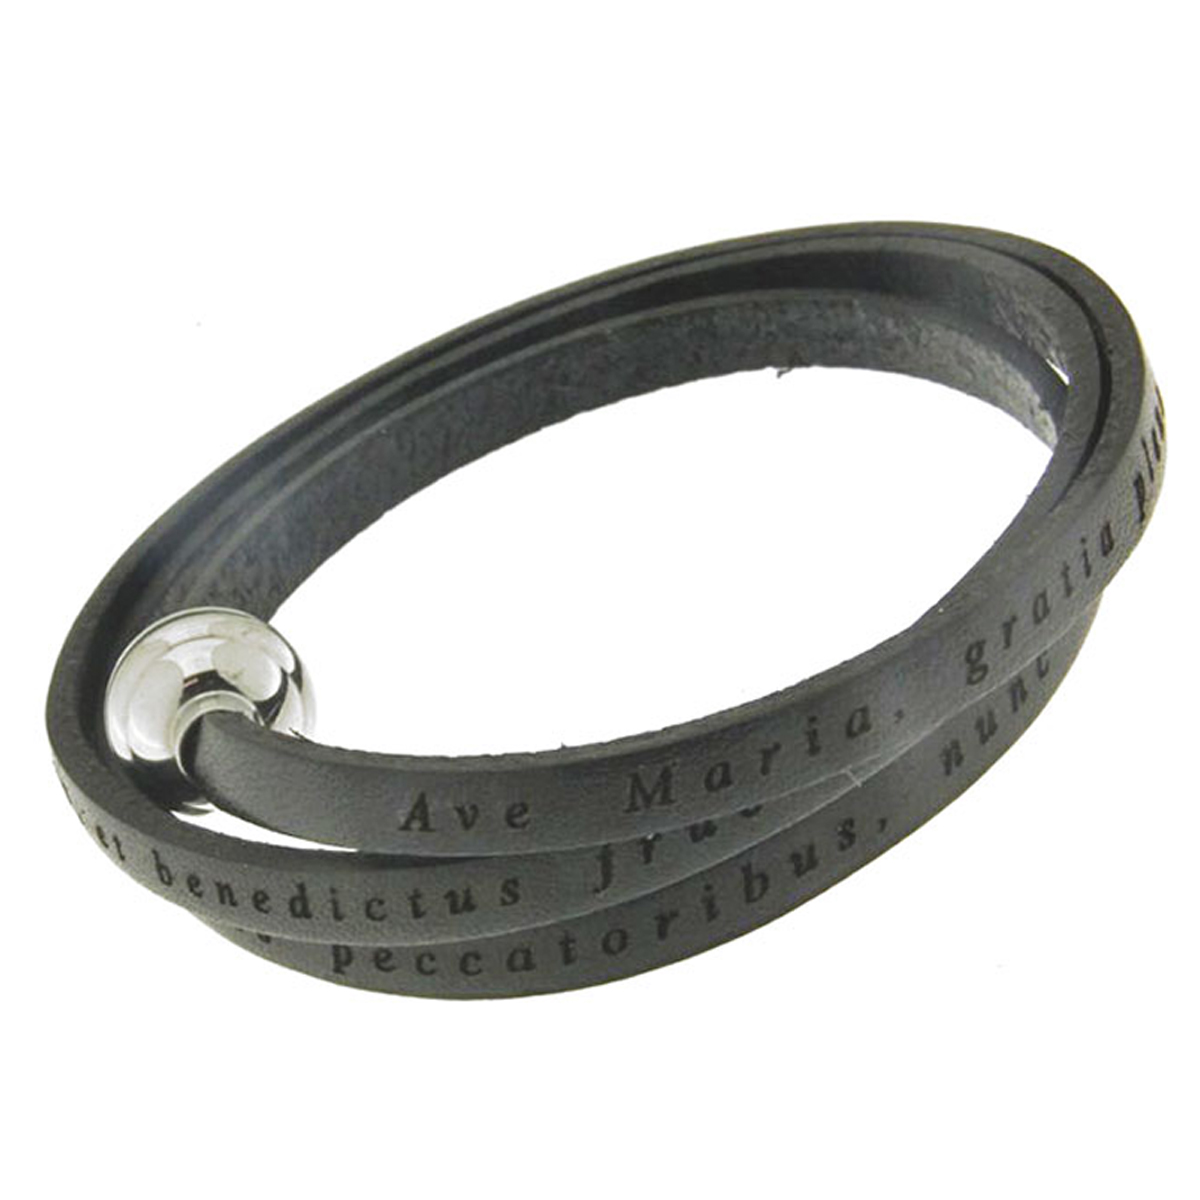 Bracelet acier cuir artisanal \'Ave Maria\' noir (spiritus) - 3 tours, 54 cm 4 mm - [Q4629]